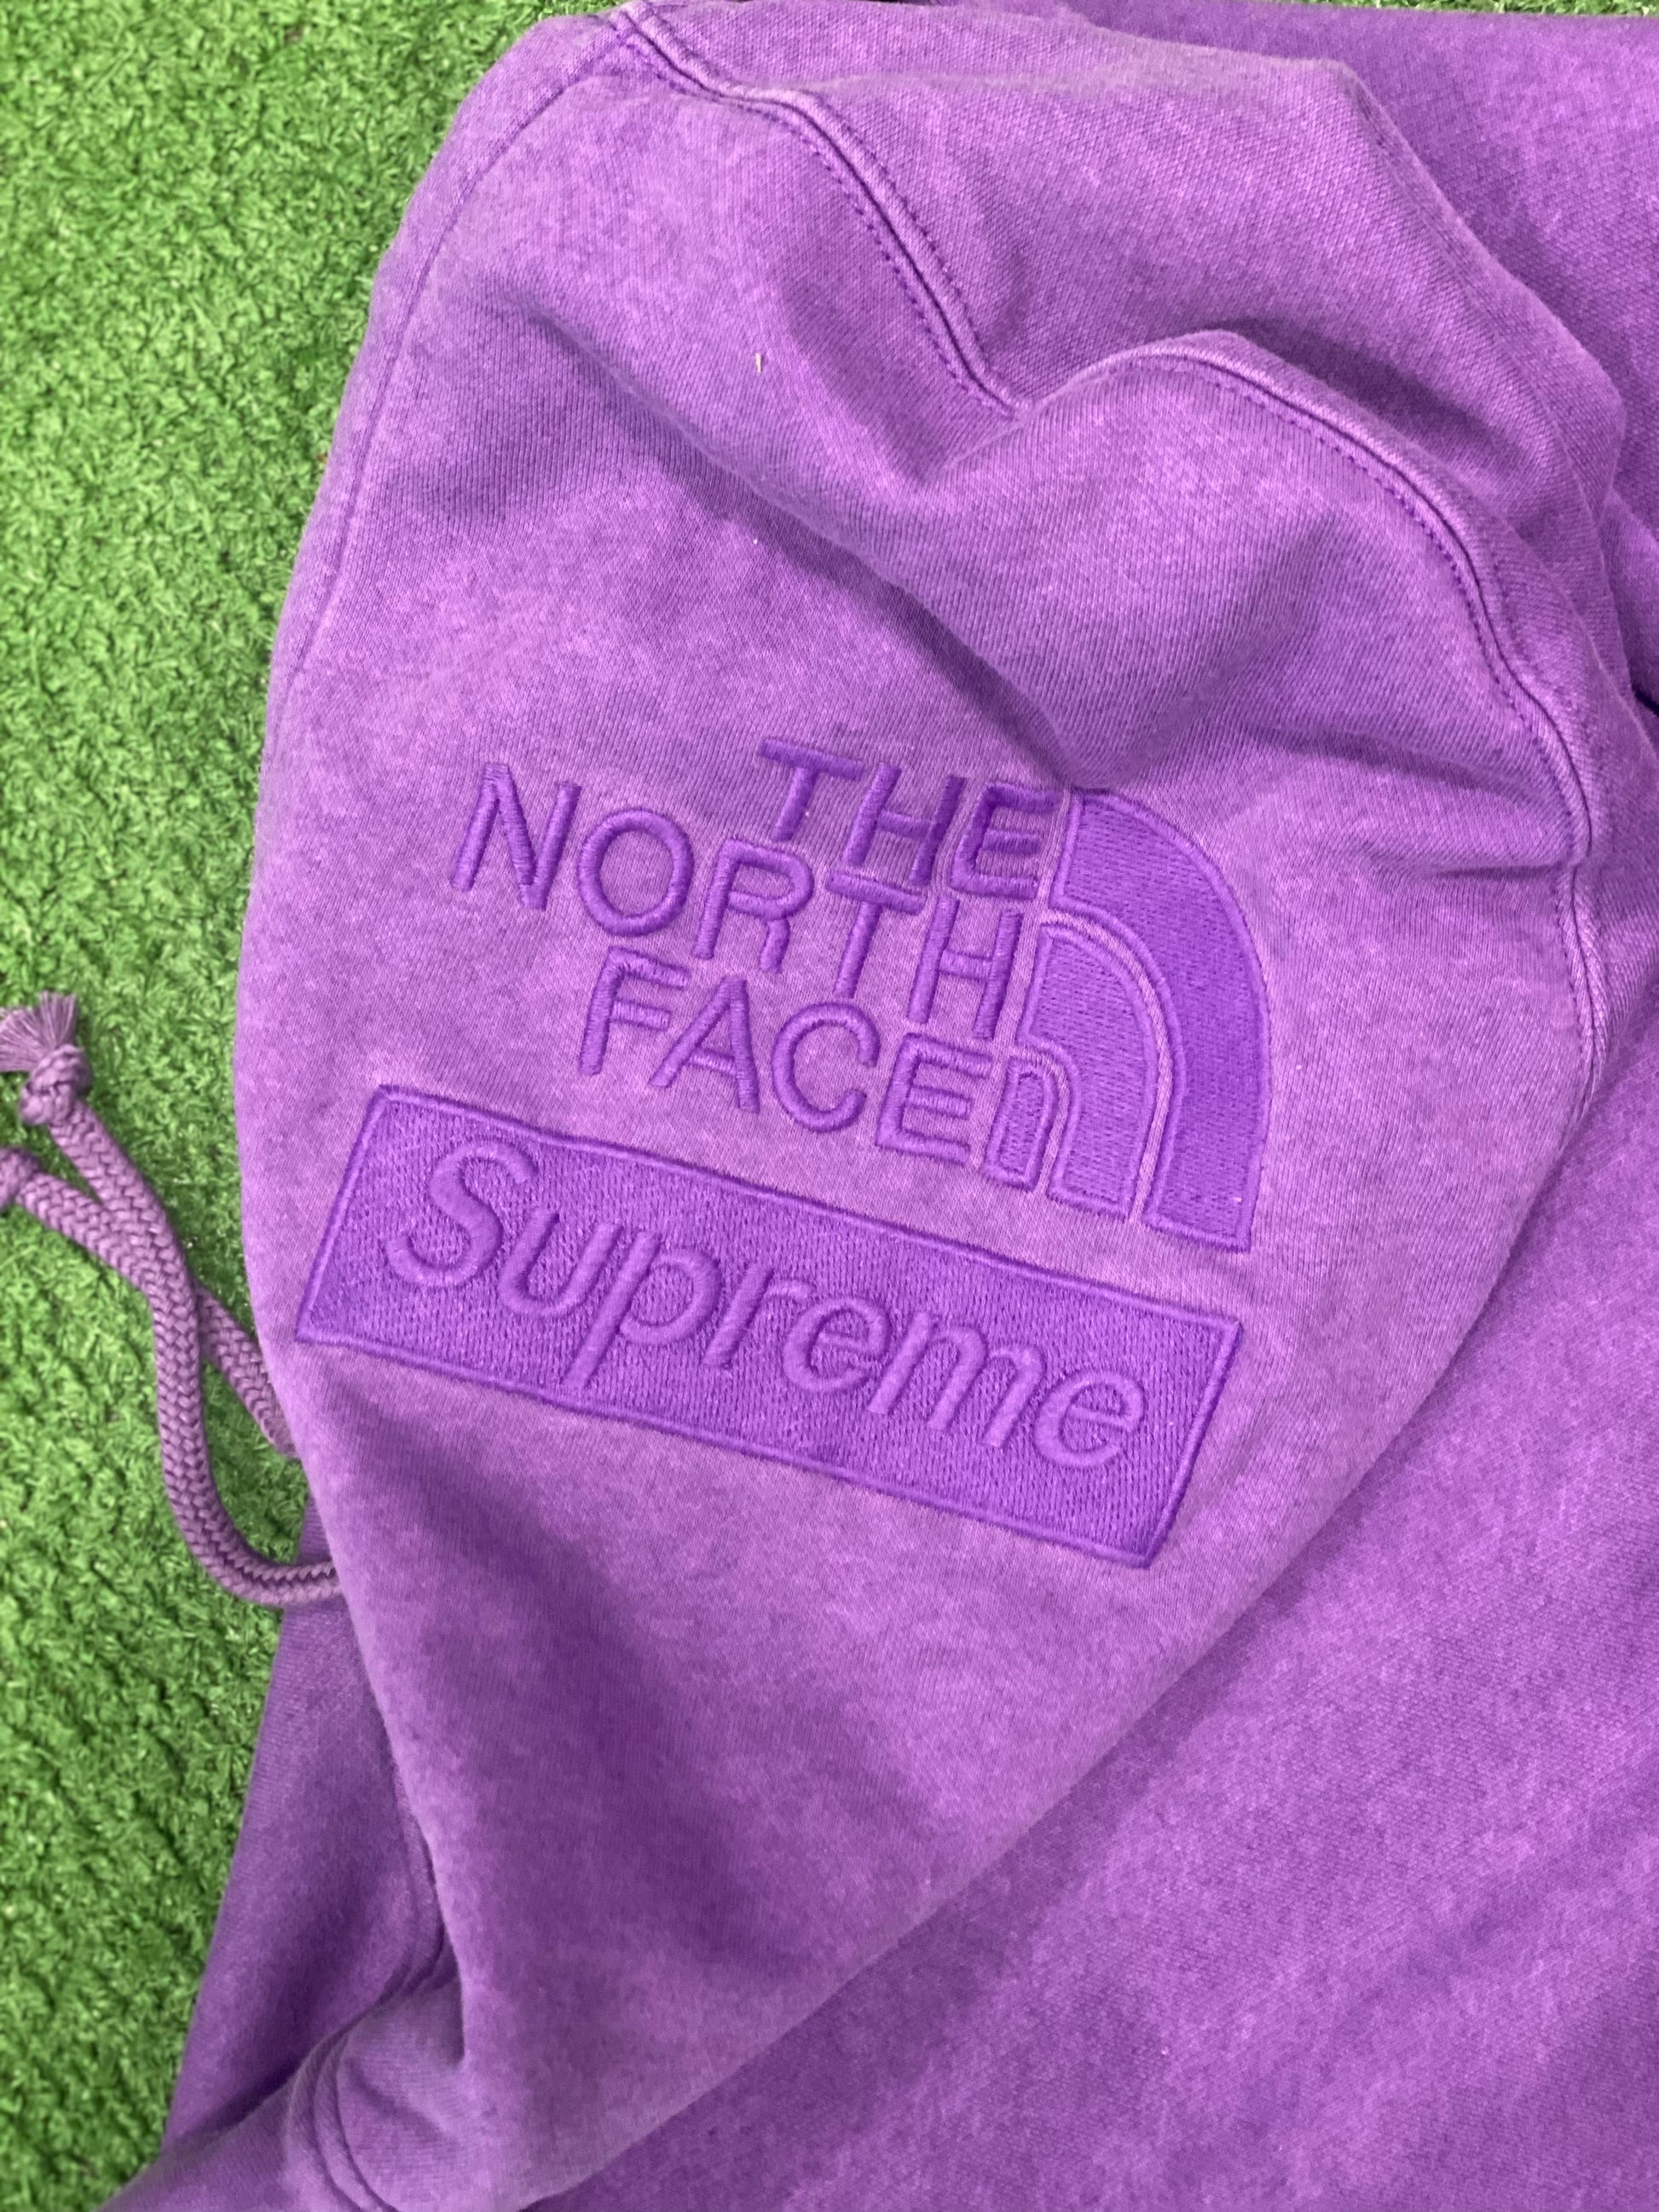 Supreme The North Face Pigment Printed Hooded Sweatshirt Purple, Sweatshirt - Supra Sneakers